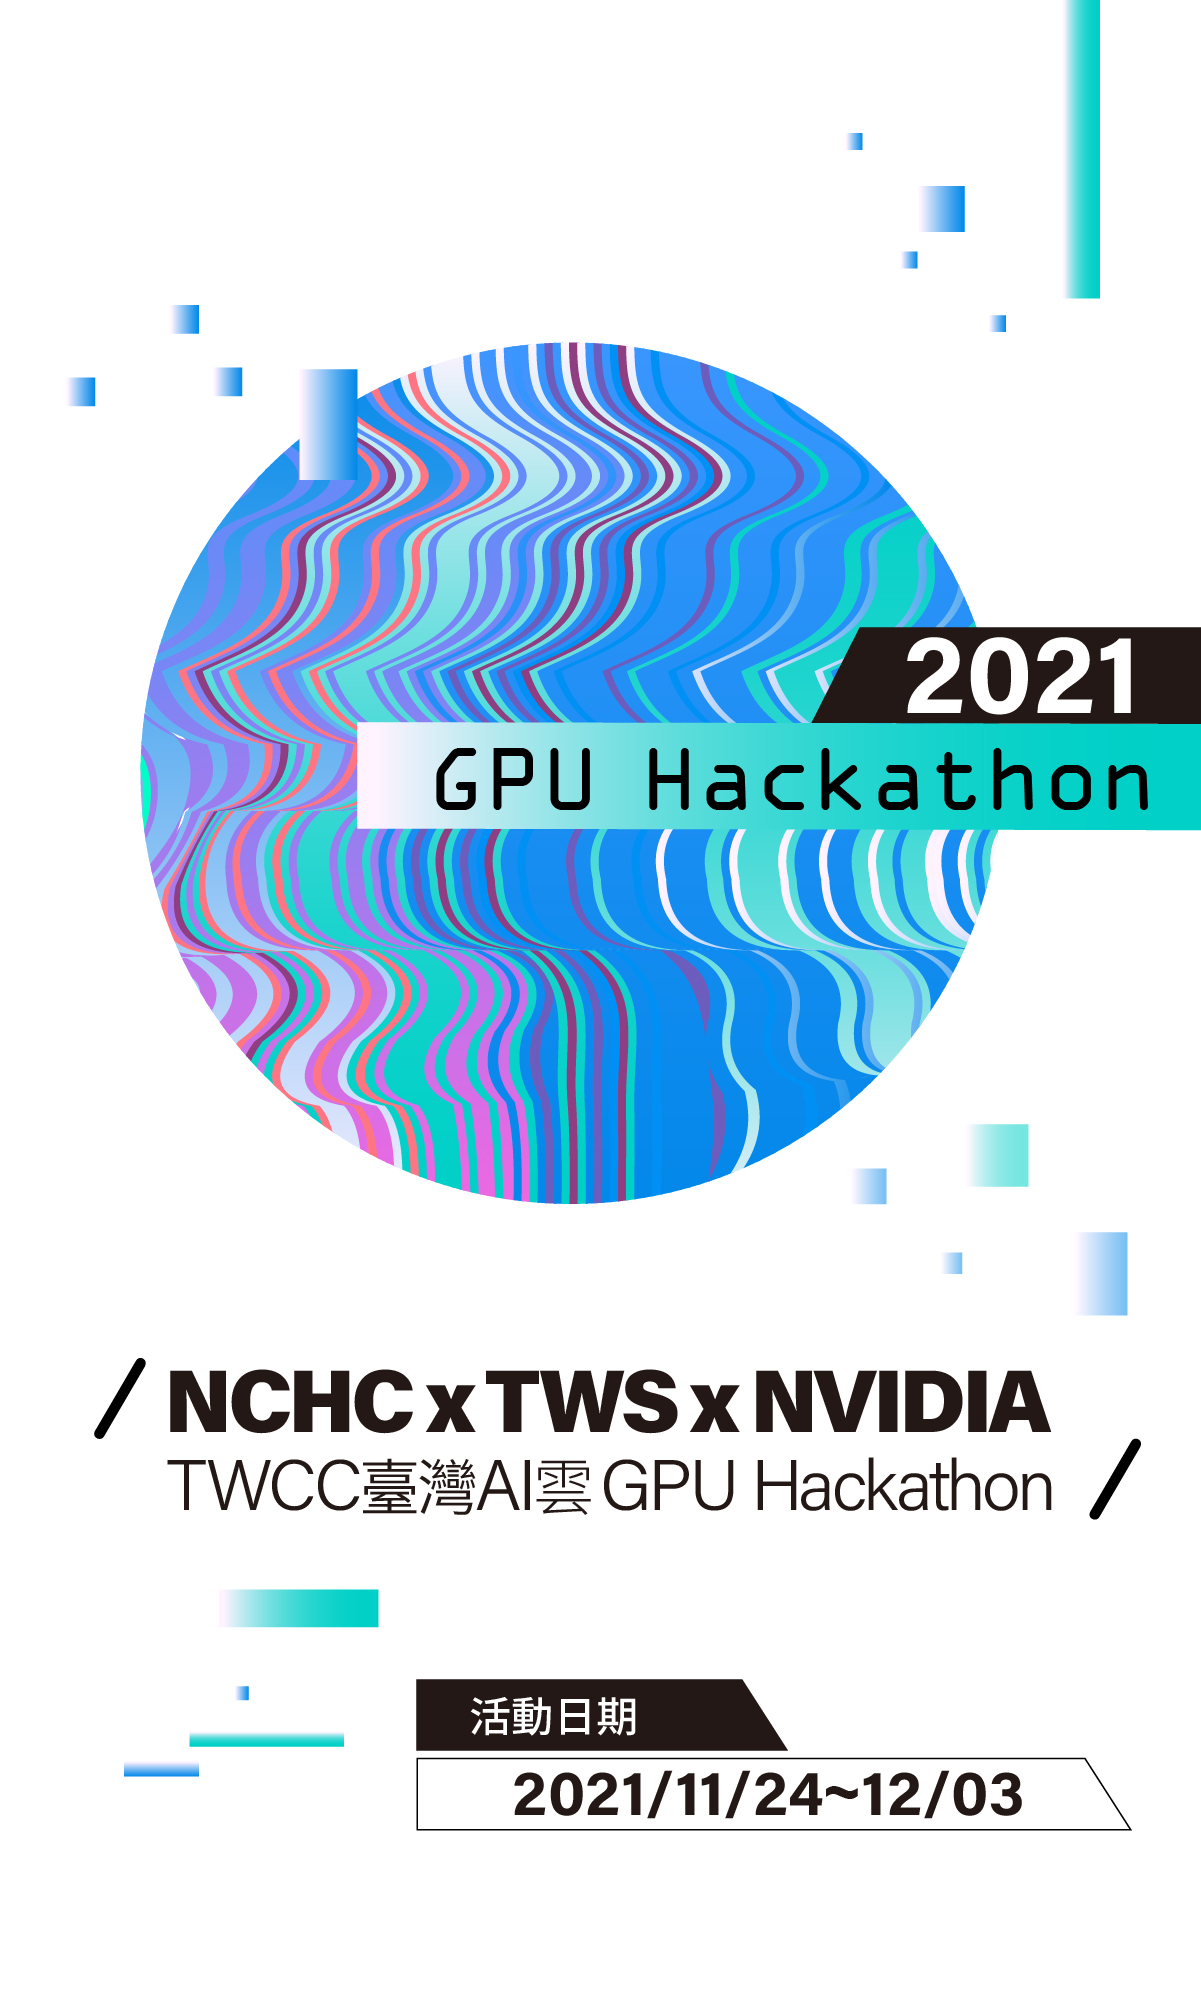 TWCC 臺灣AI 雲GPU Hackathon 2021